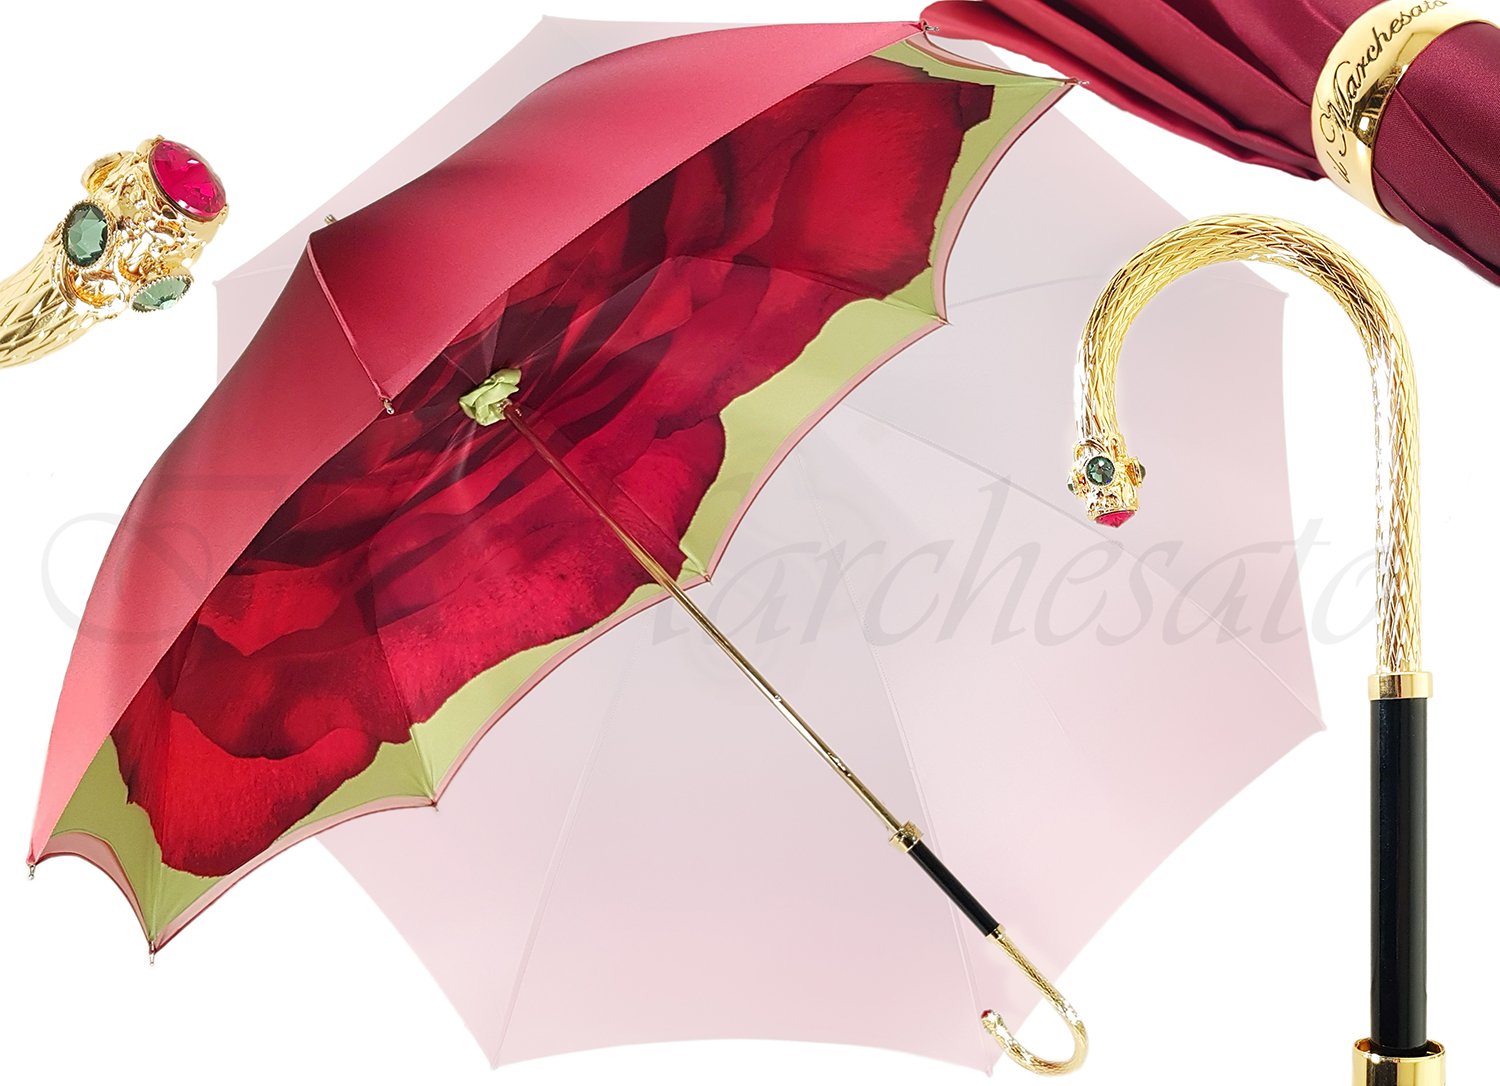 Beautiful Umbrella With Rose Design - il-marchesato